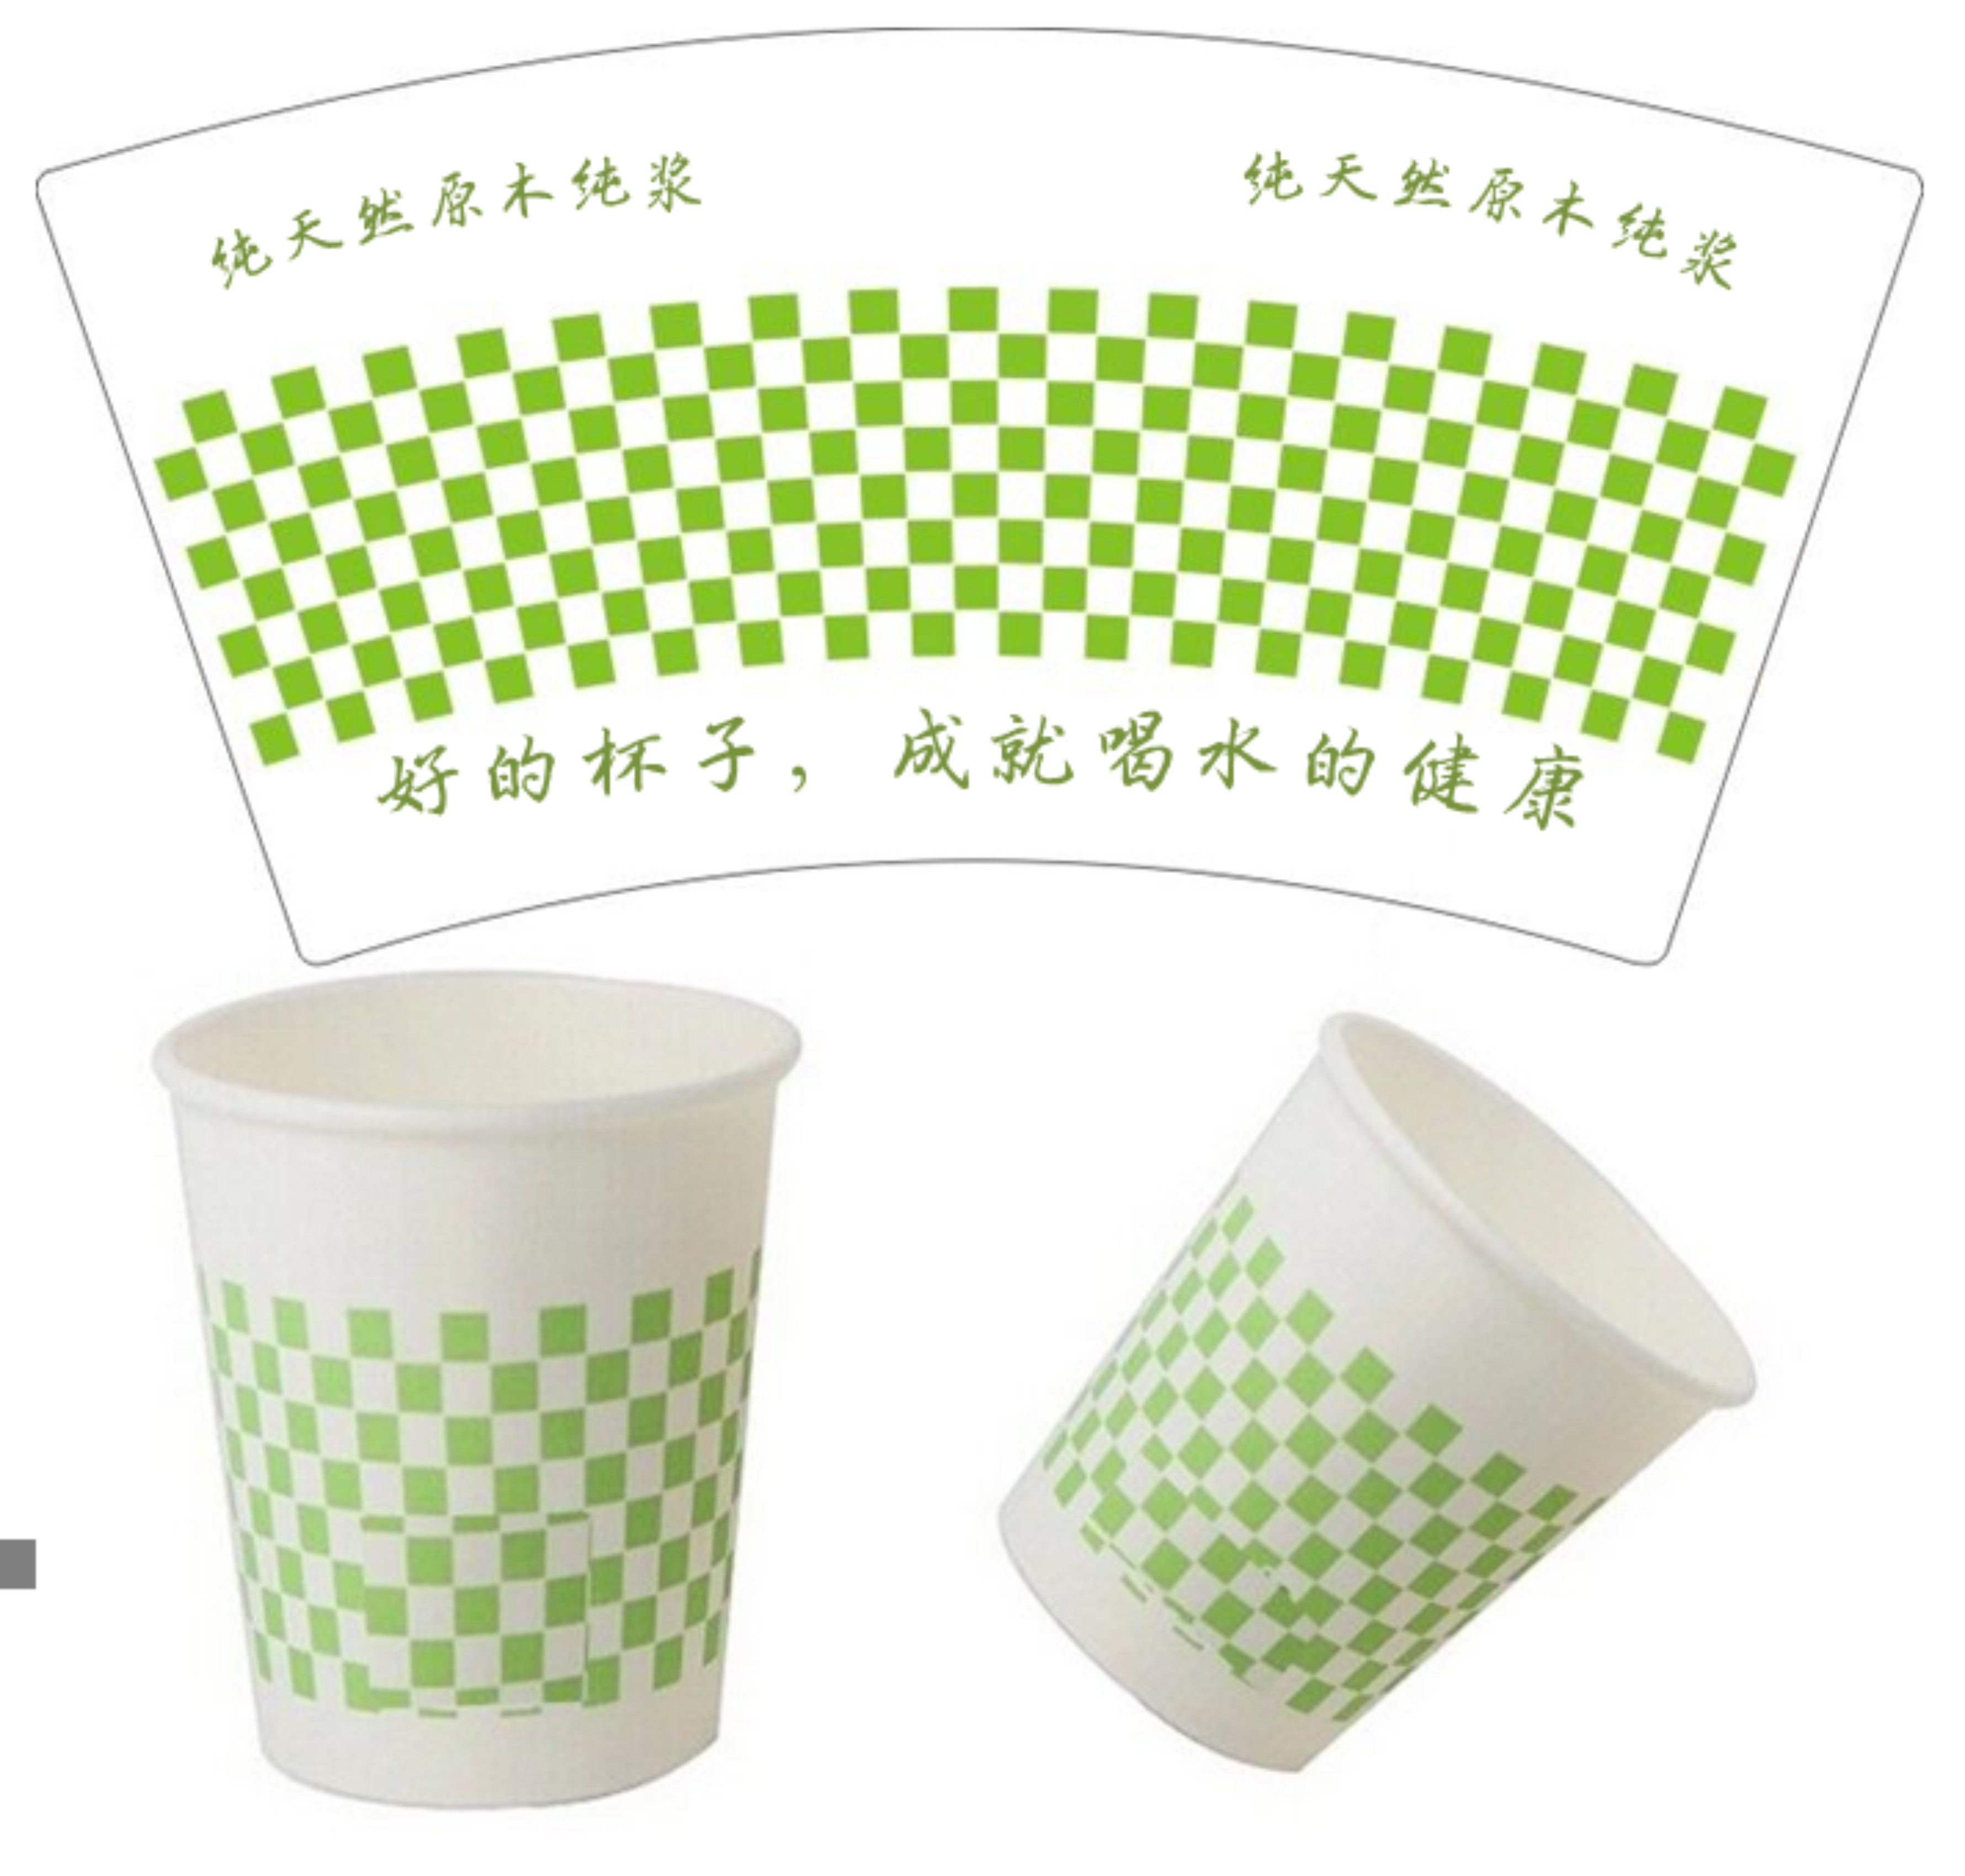 广州咖啡杯一次性批发清明放假安排高速免费北京4天不限行